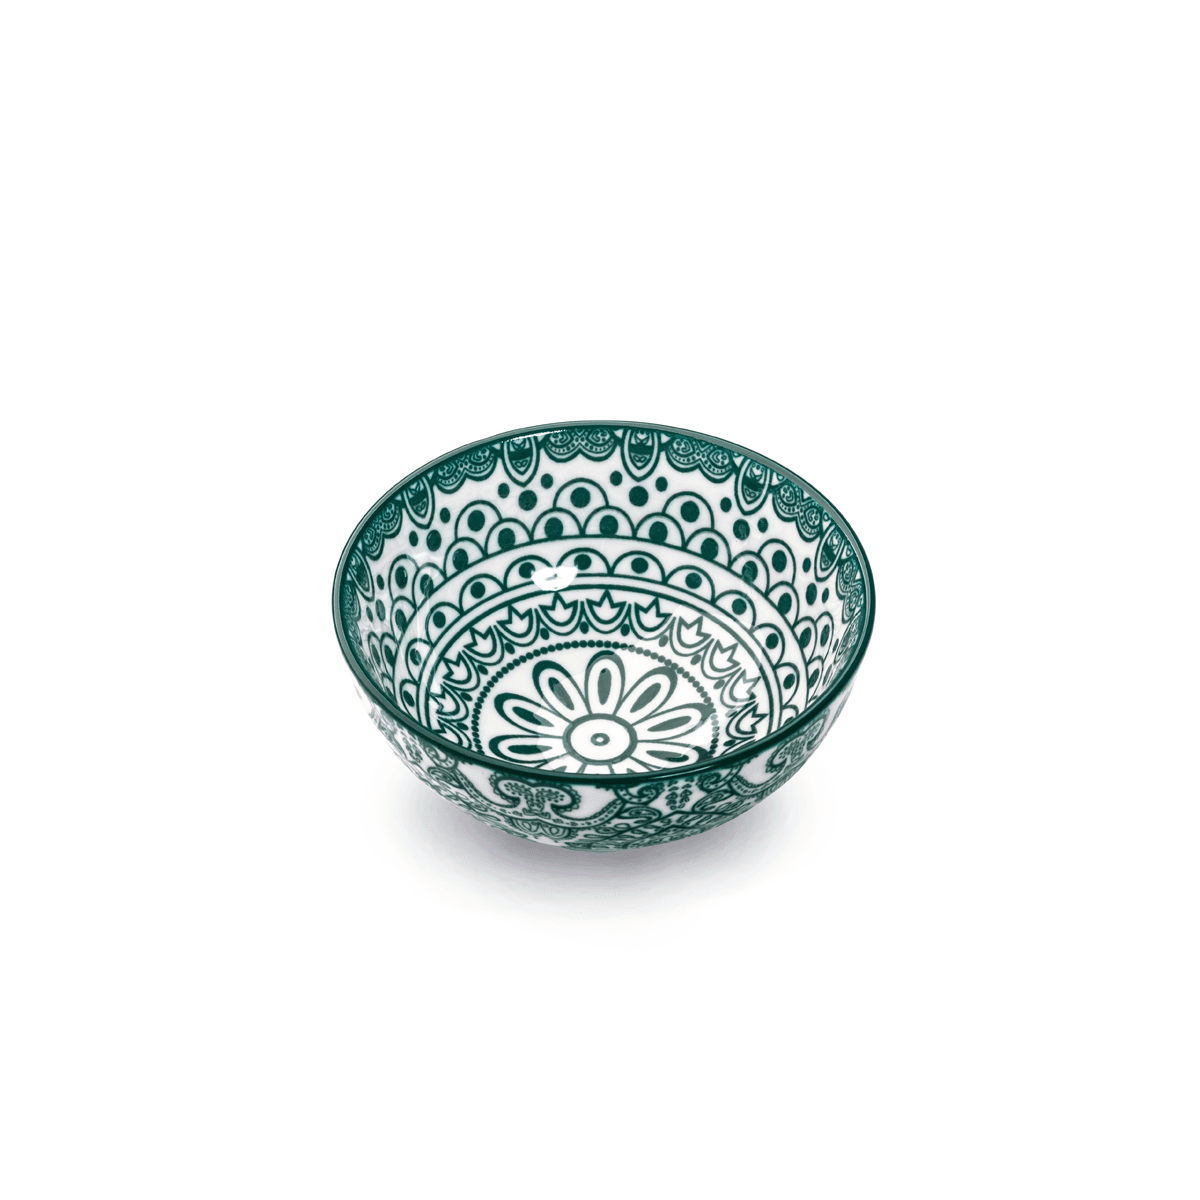 Che Brucia Arabesque Green Porcelain Bowl 10 cm / 4" Green White Porcelain